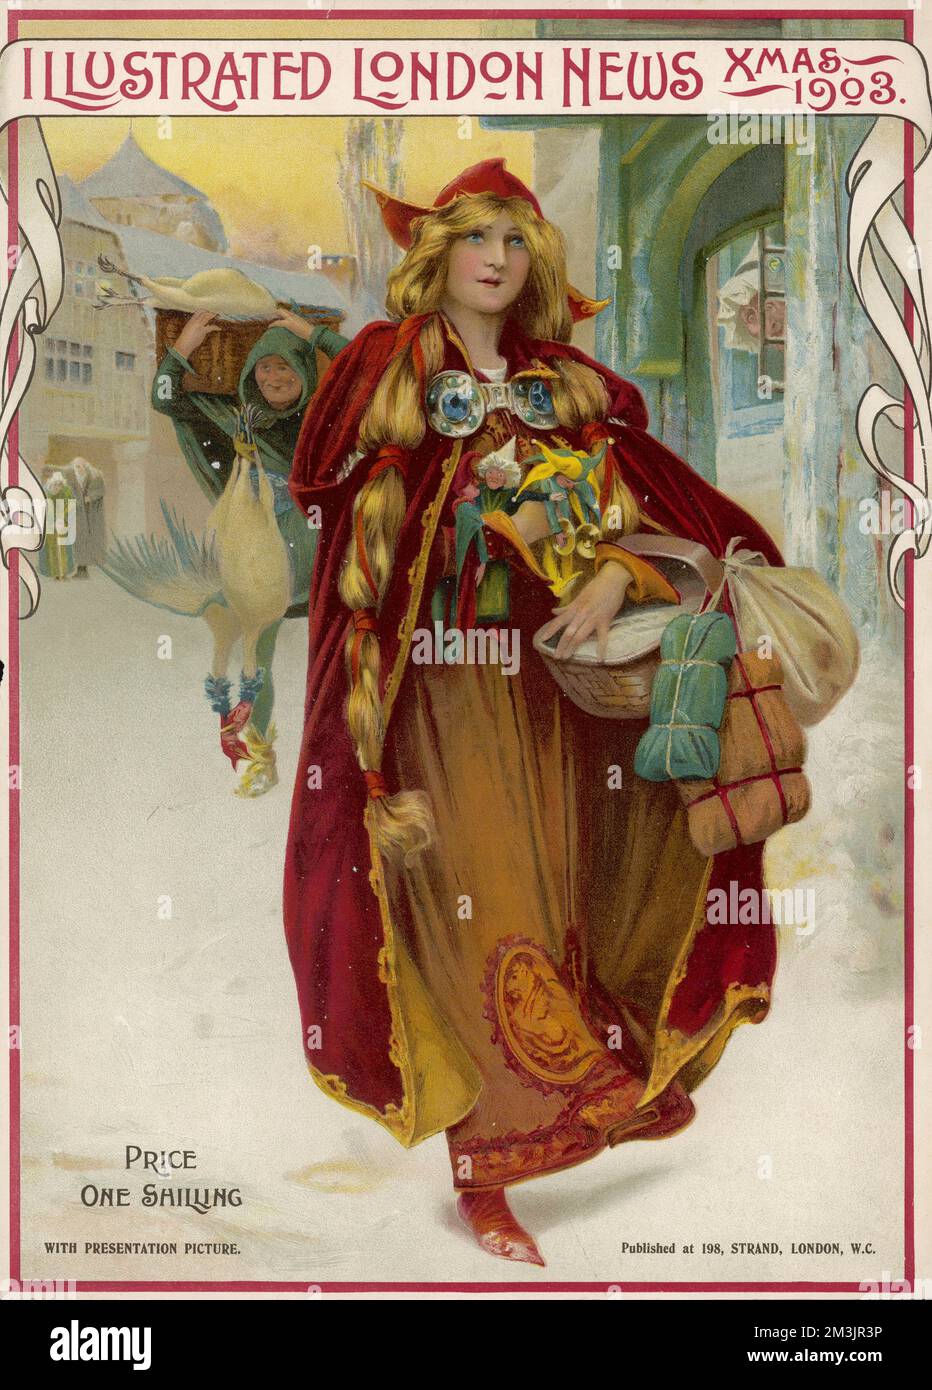 Jeune femme en robe saxonne ou médiévale portant un panier de cadeaux à travers une rue enneigée. Un vendeur de turquie peut être vu derrière elle. Date: Numéro de Noël 1903 Banque D'Images